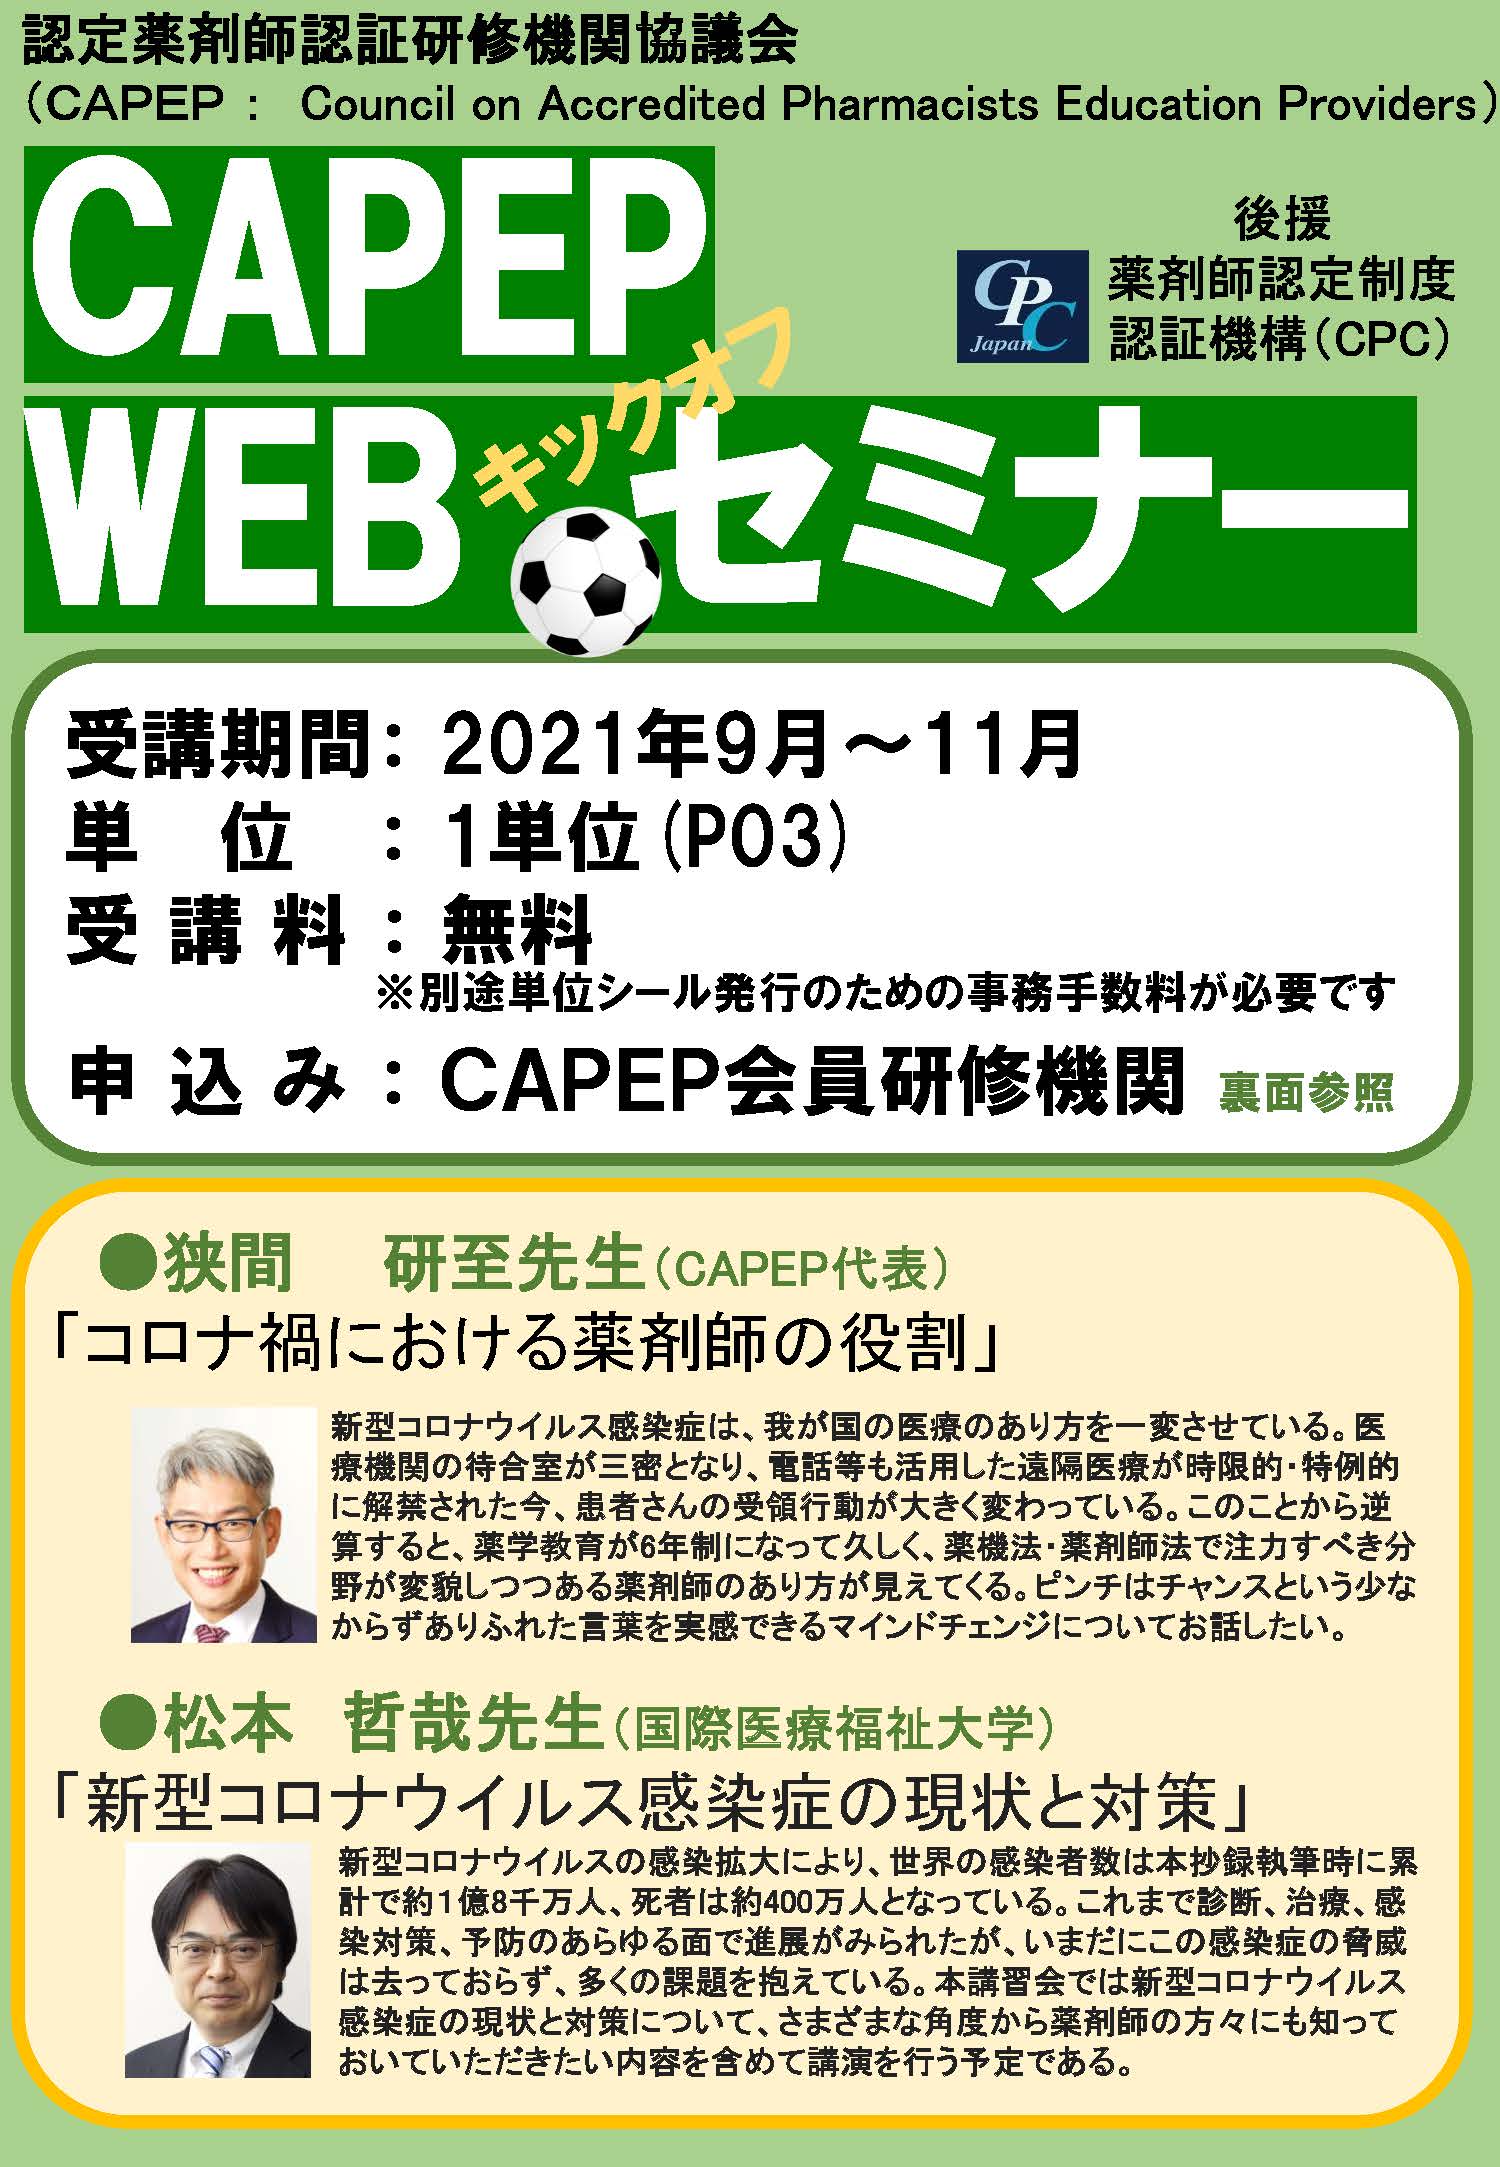 E Learningに Capep Webセミナーキックオフ を追加しました 一般社団法人 日本在宅薬学会